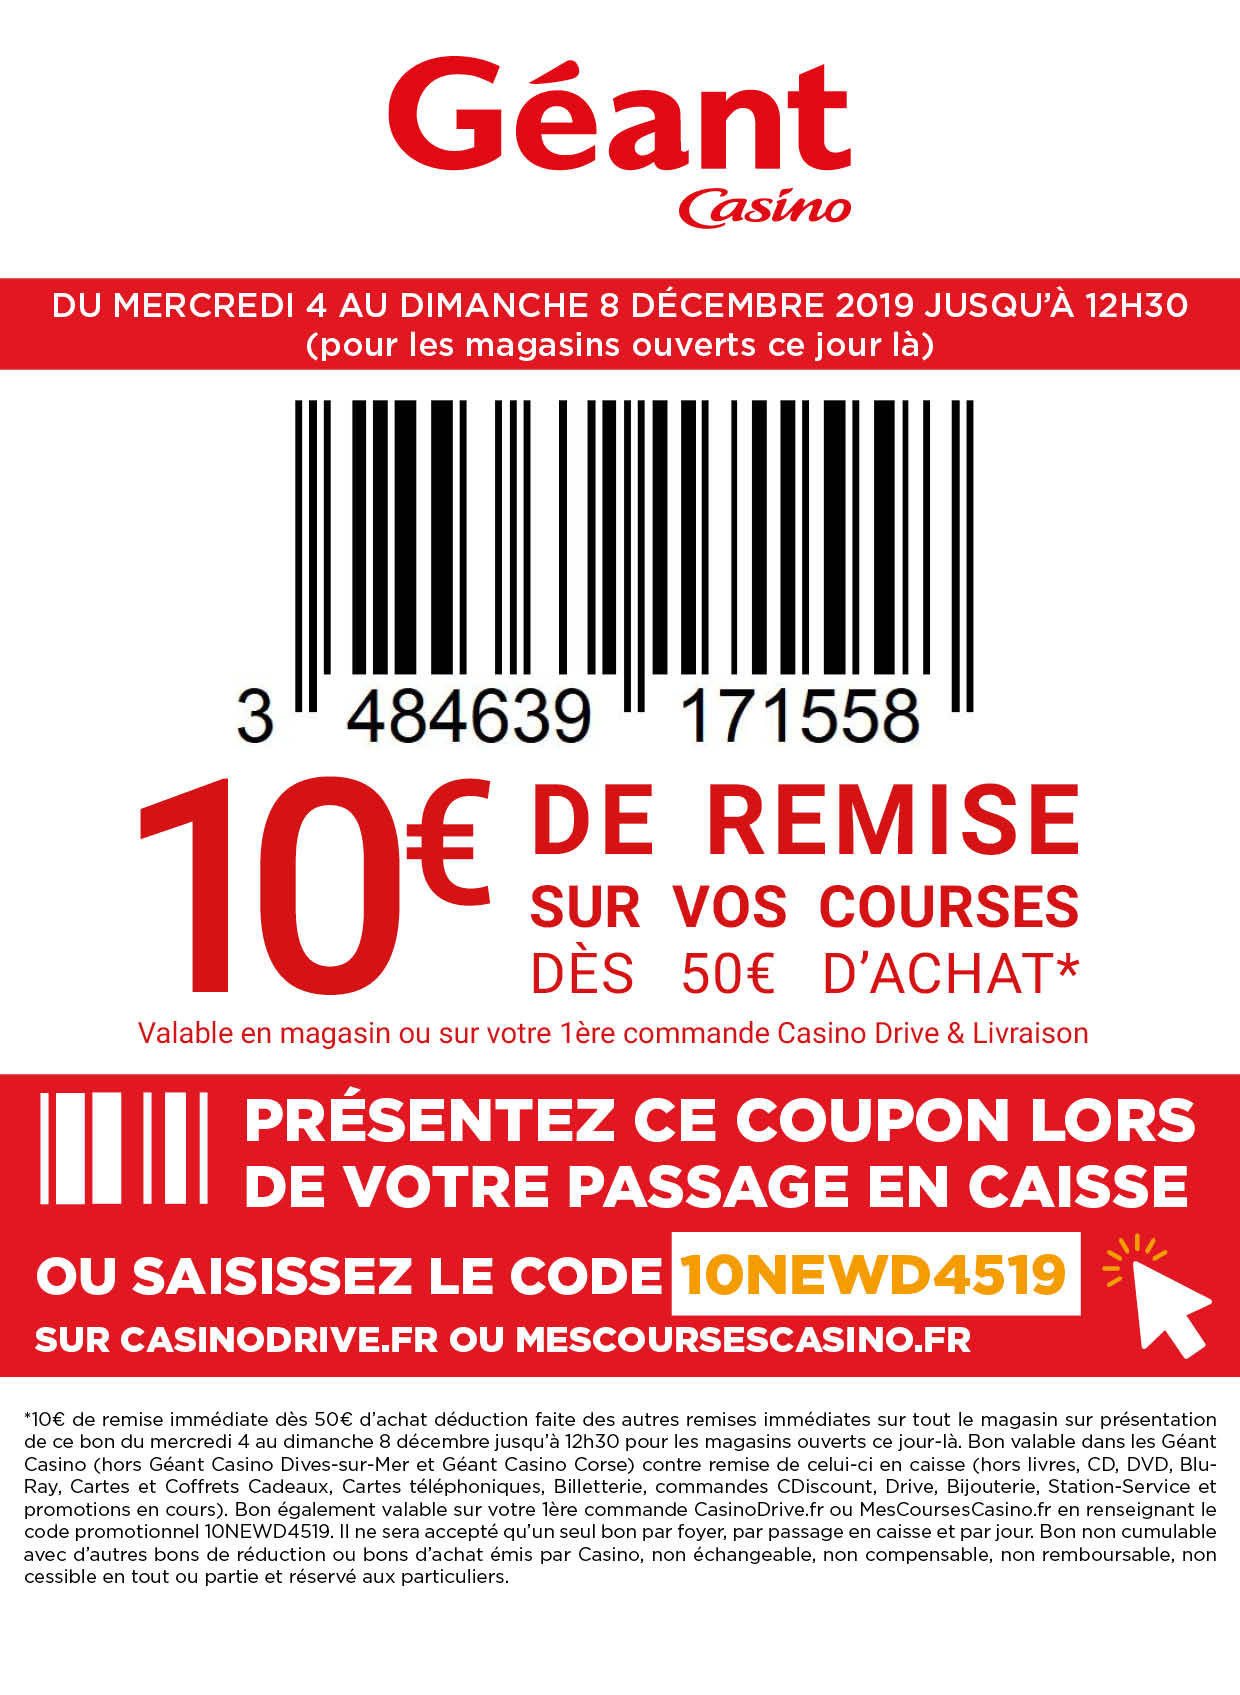 Les Bons Plans Promotions Du Jeudi 5 Decembre 2019 Carrefour Tassimo Sports Direct Geant Casino Mango Reebok Lacoste Naf Naf Le Bon Plan